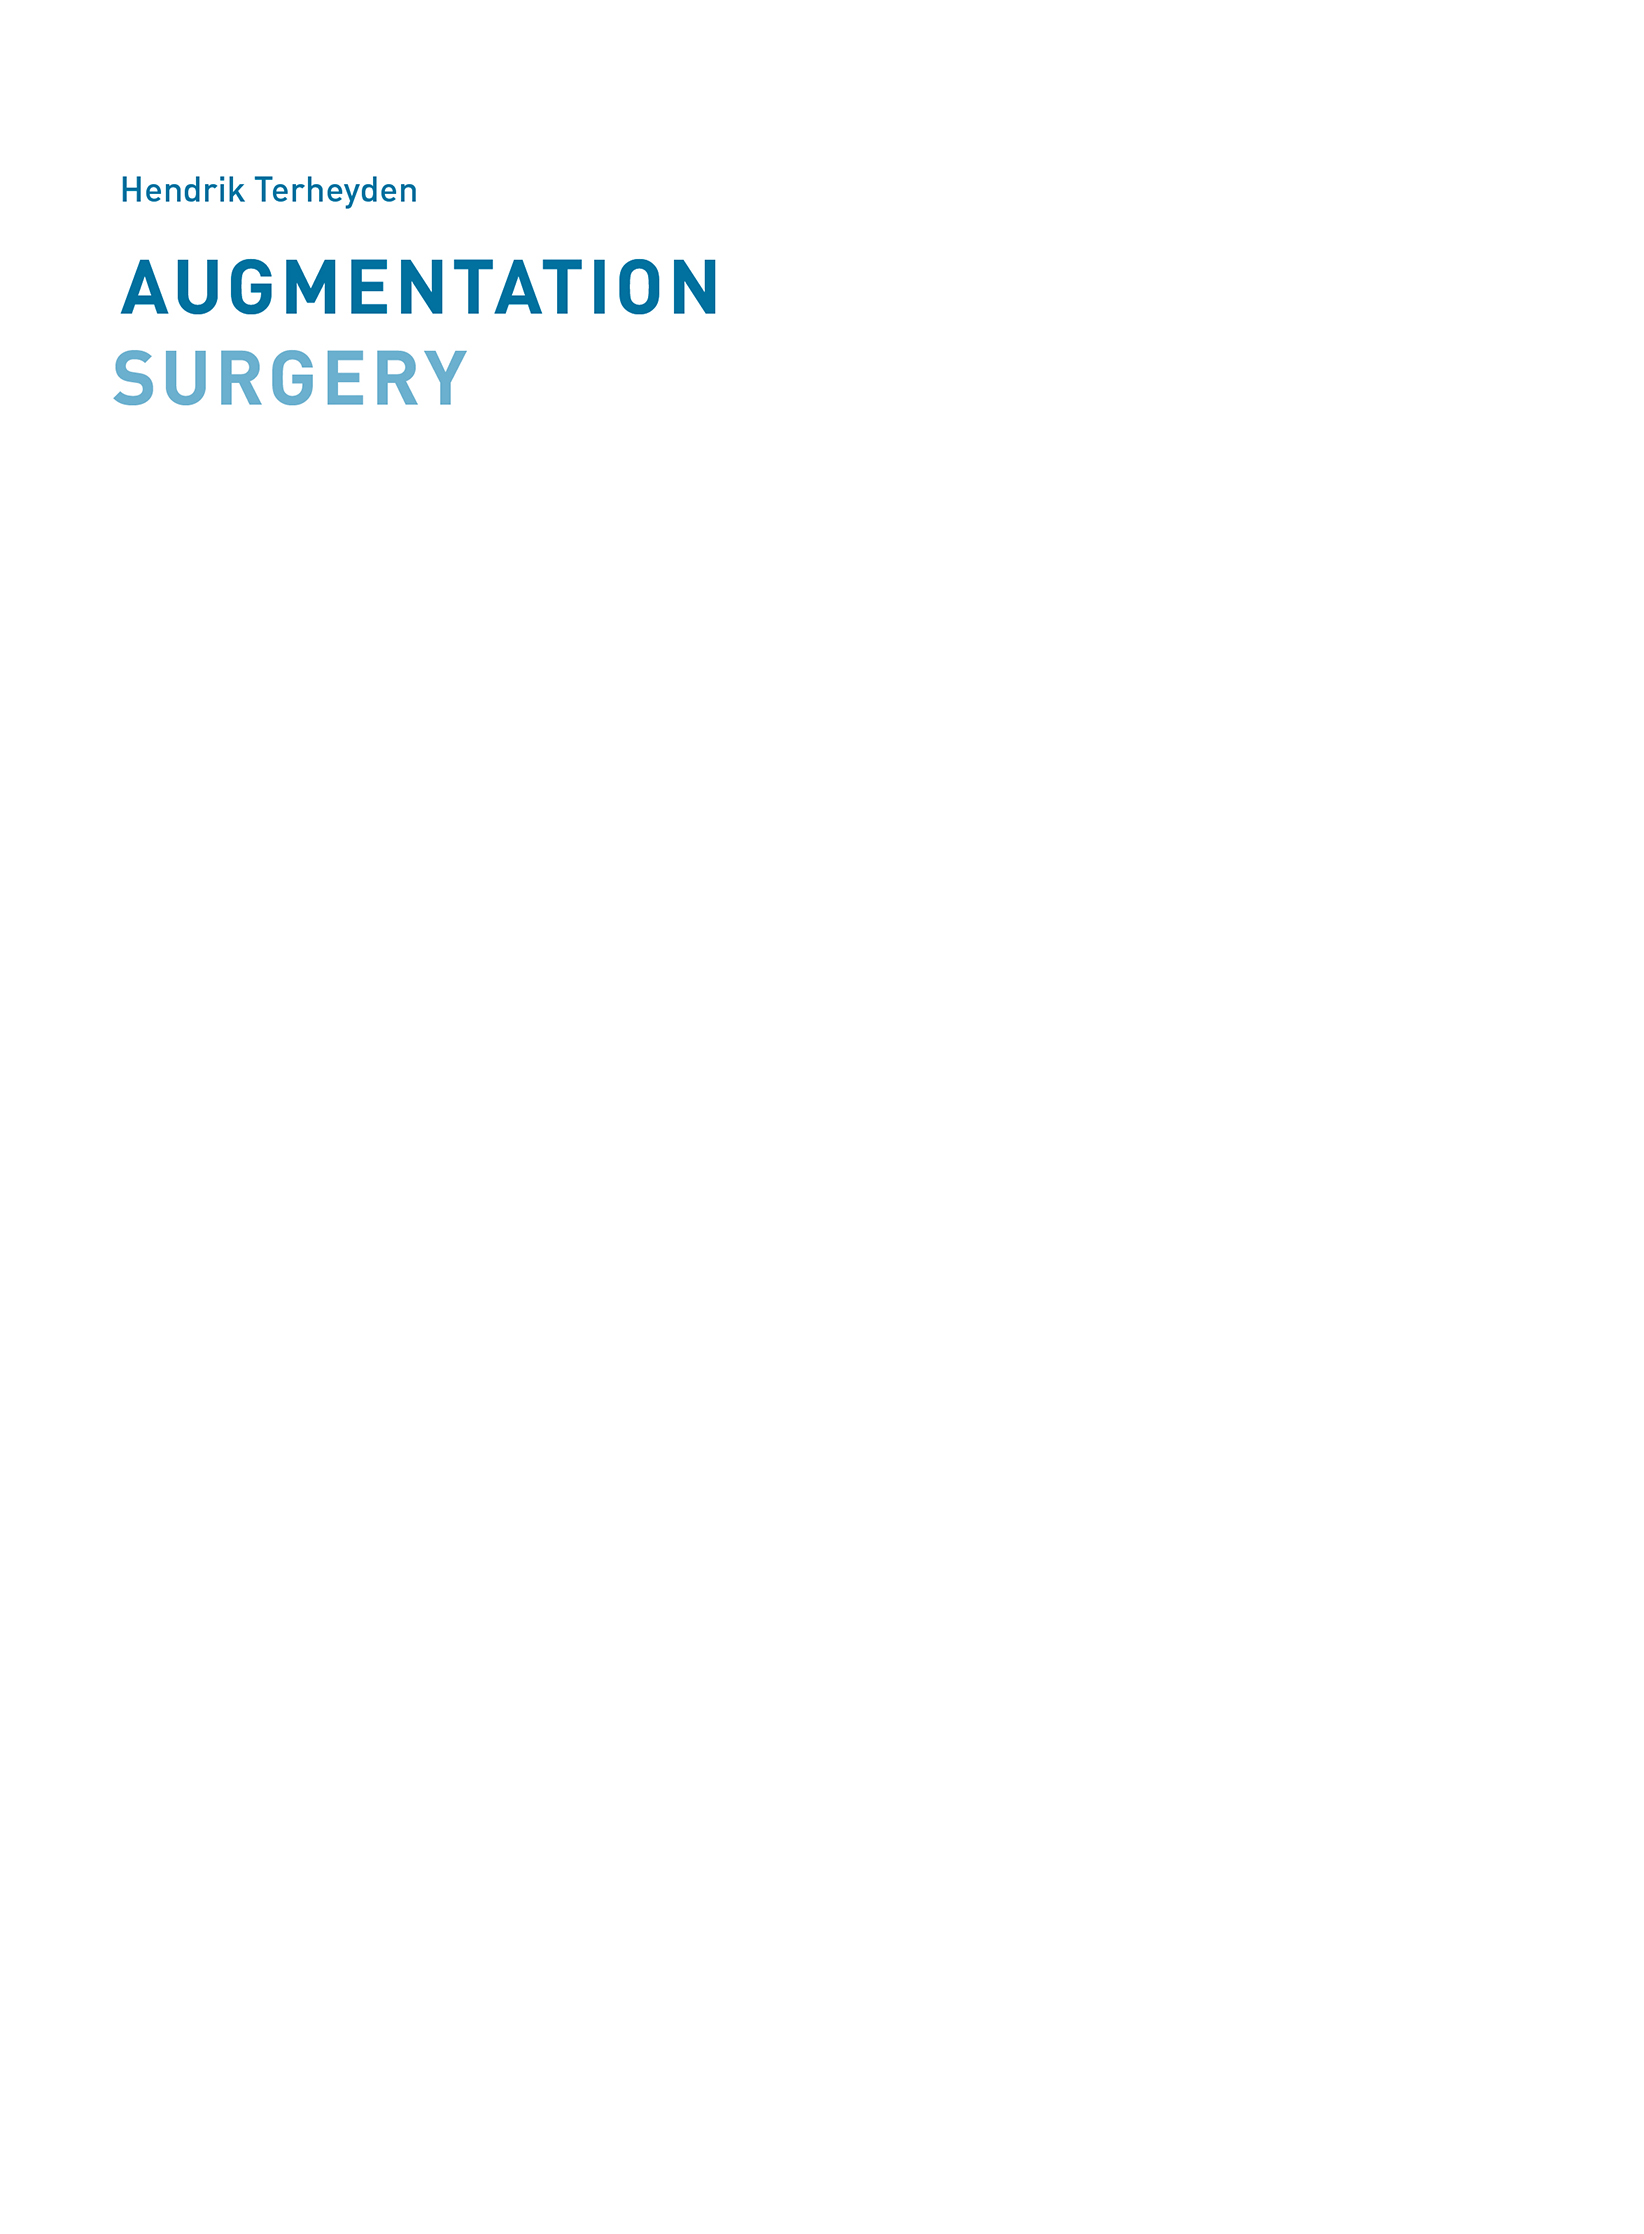 Augmentation Surgery Biologic Principles Surgical Techniques Clinical Challenges - image 2